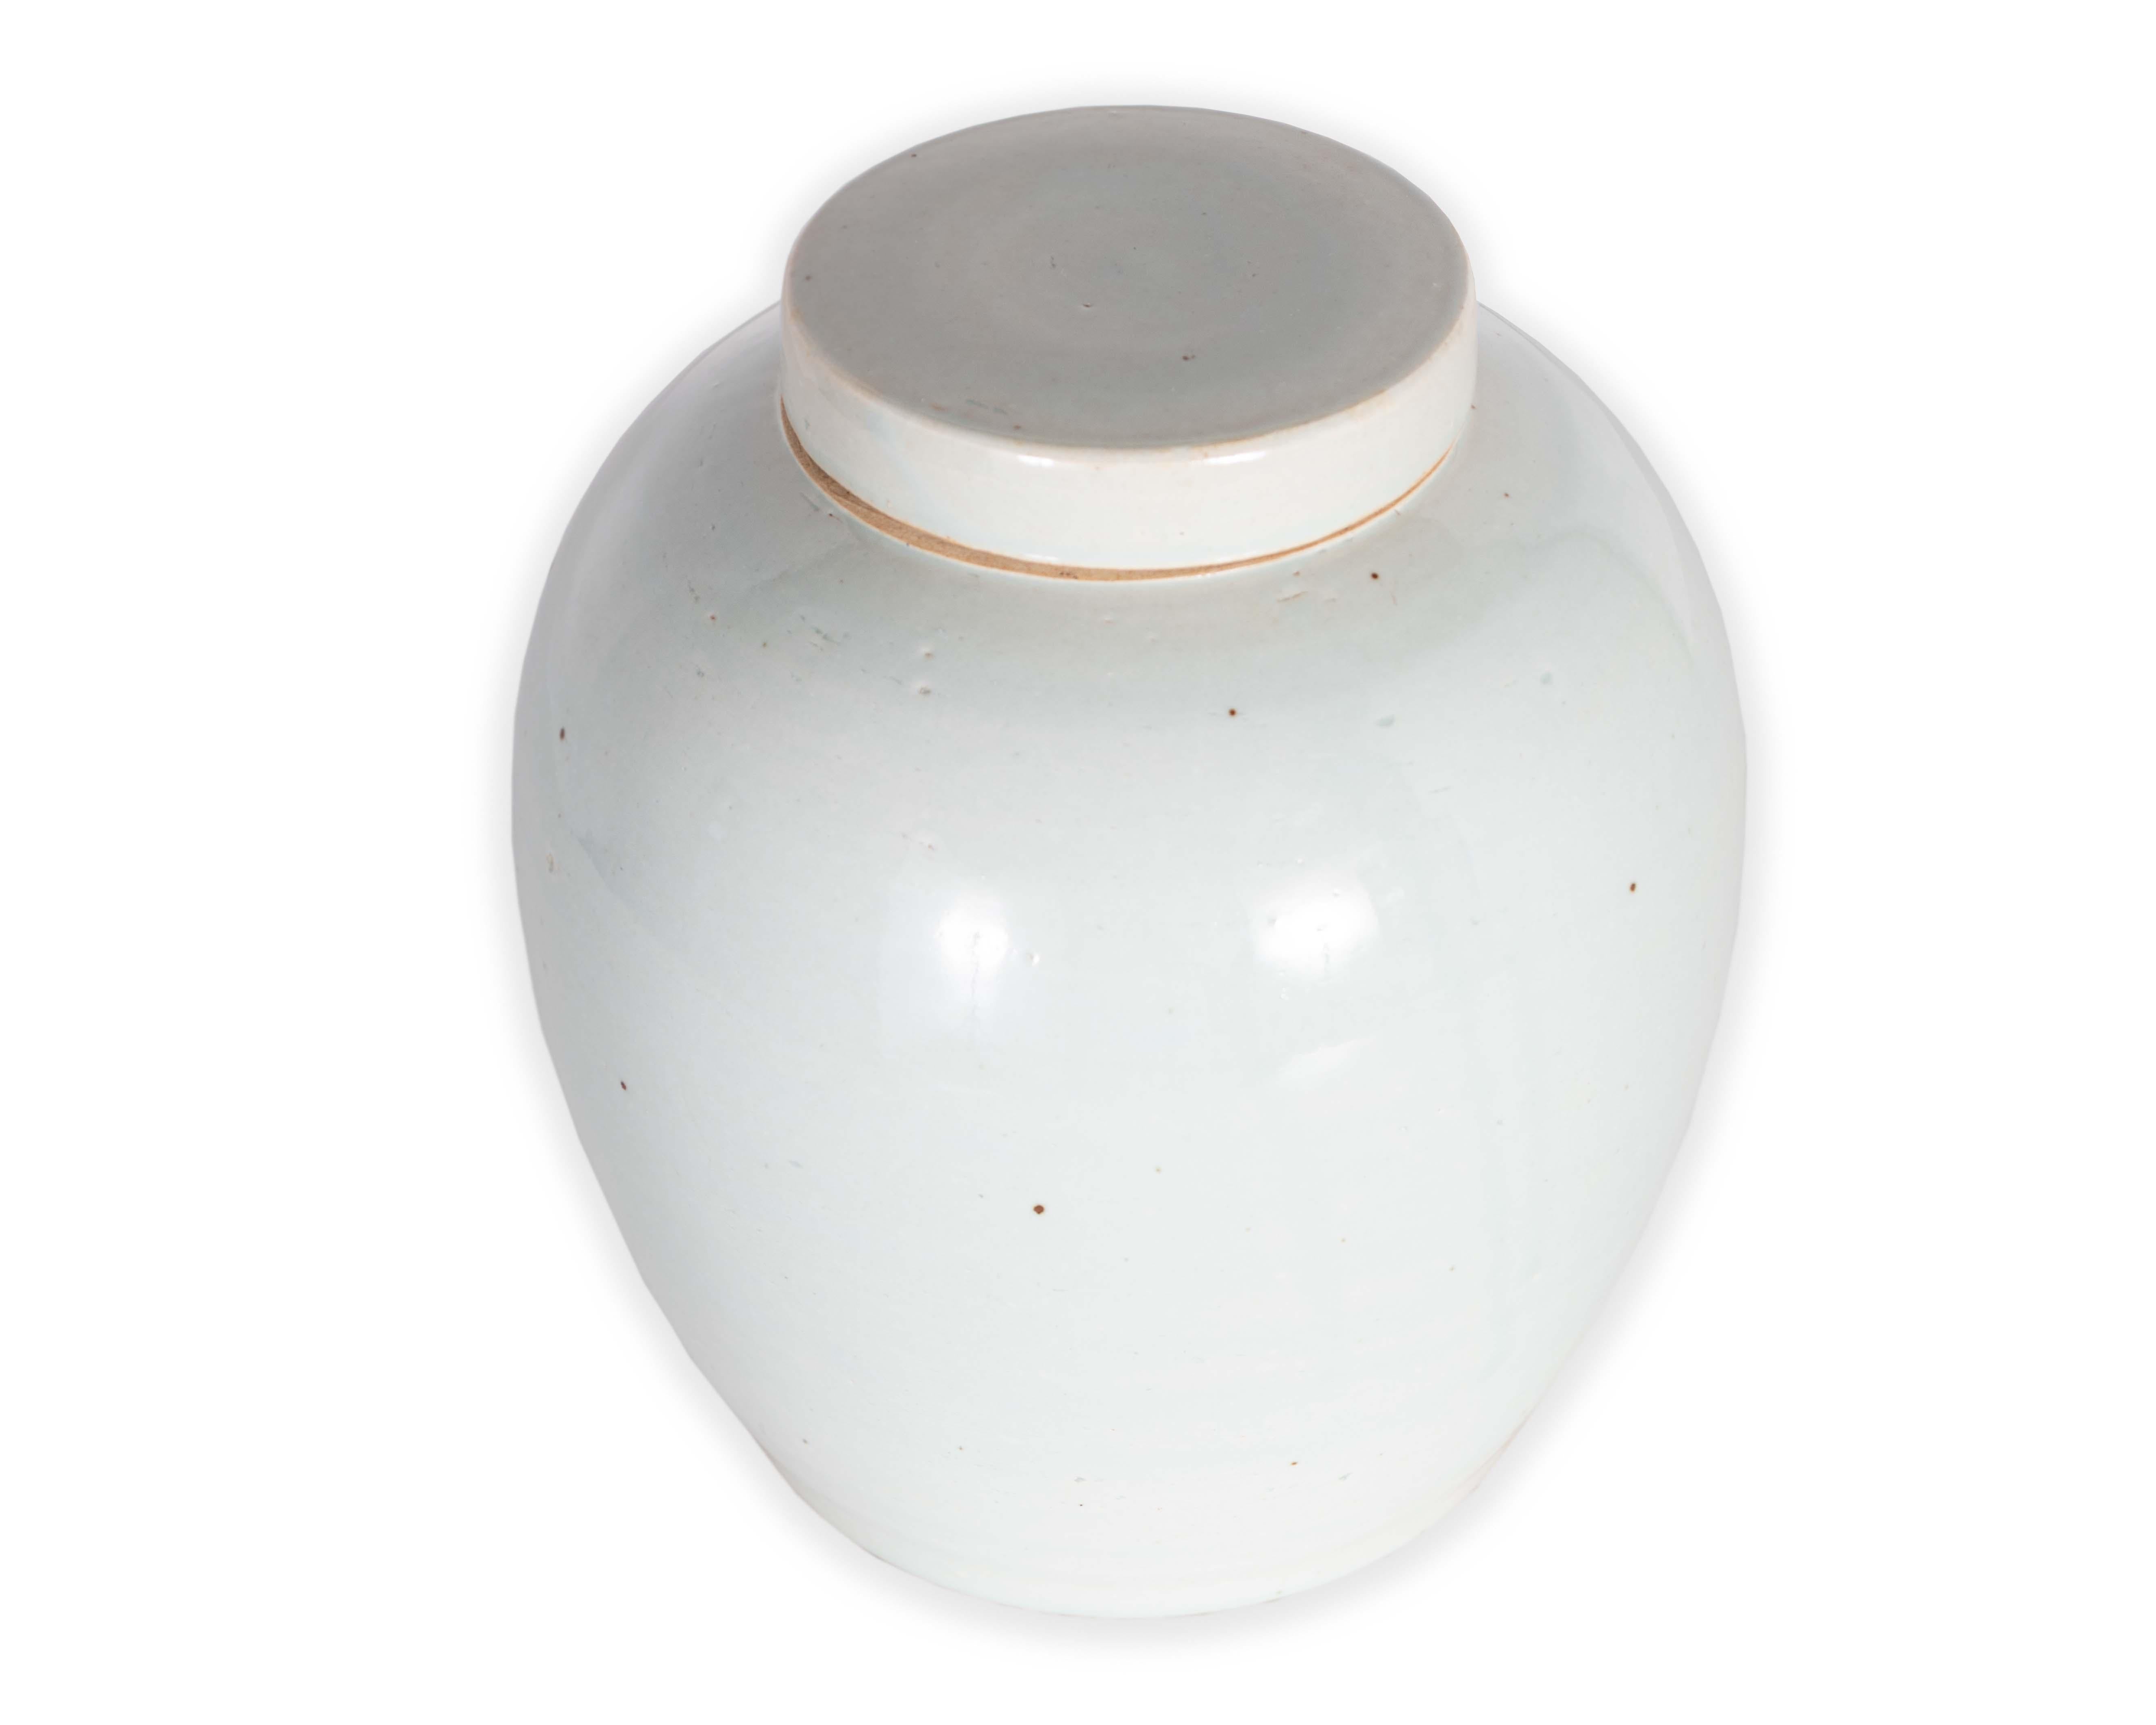 Chinesische Vase mit Kappe in heller Celadon-Crackle-Glasur.

Ein Stück aus unserer einmaligen Linie Le Monde. Exklusiv für Brendan Bass. 


